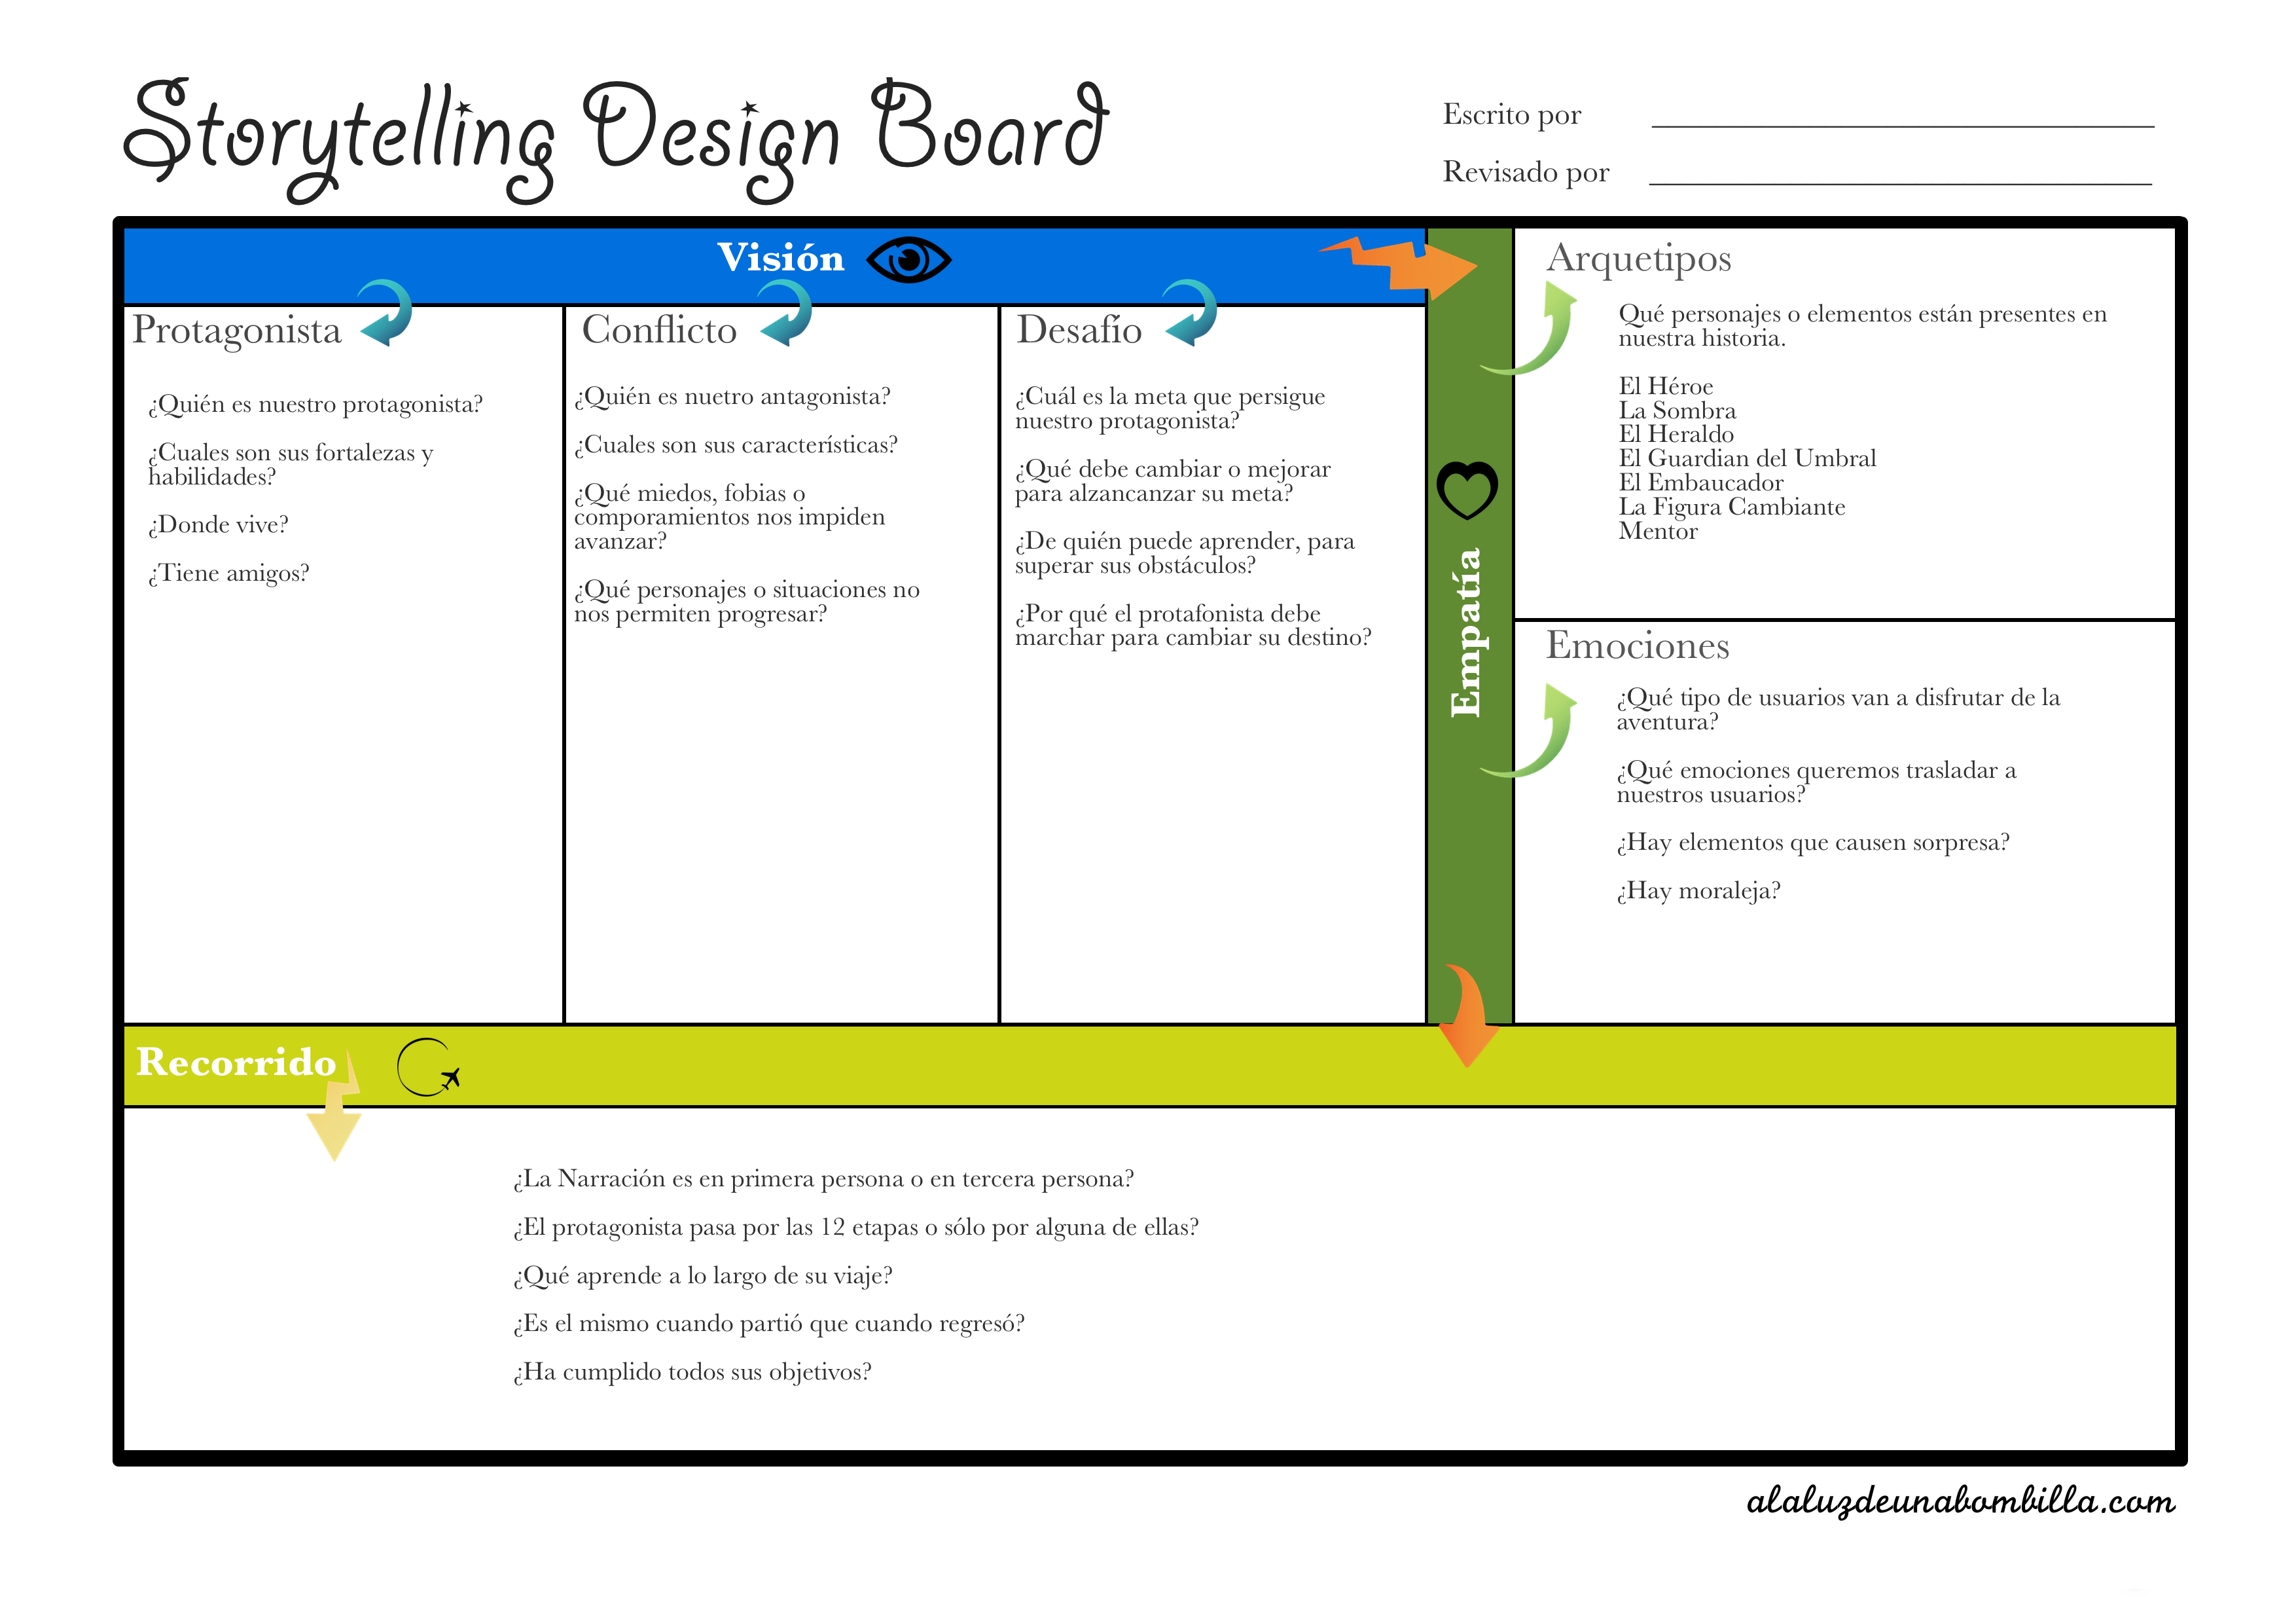 Resultado de imagen de storytelling design board